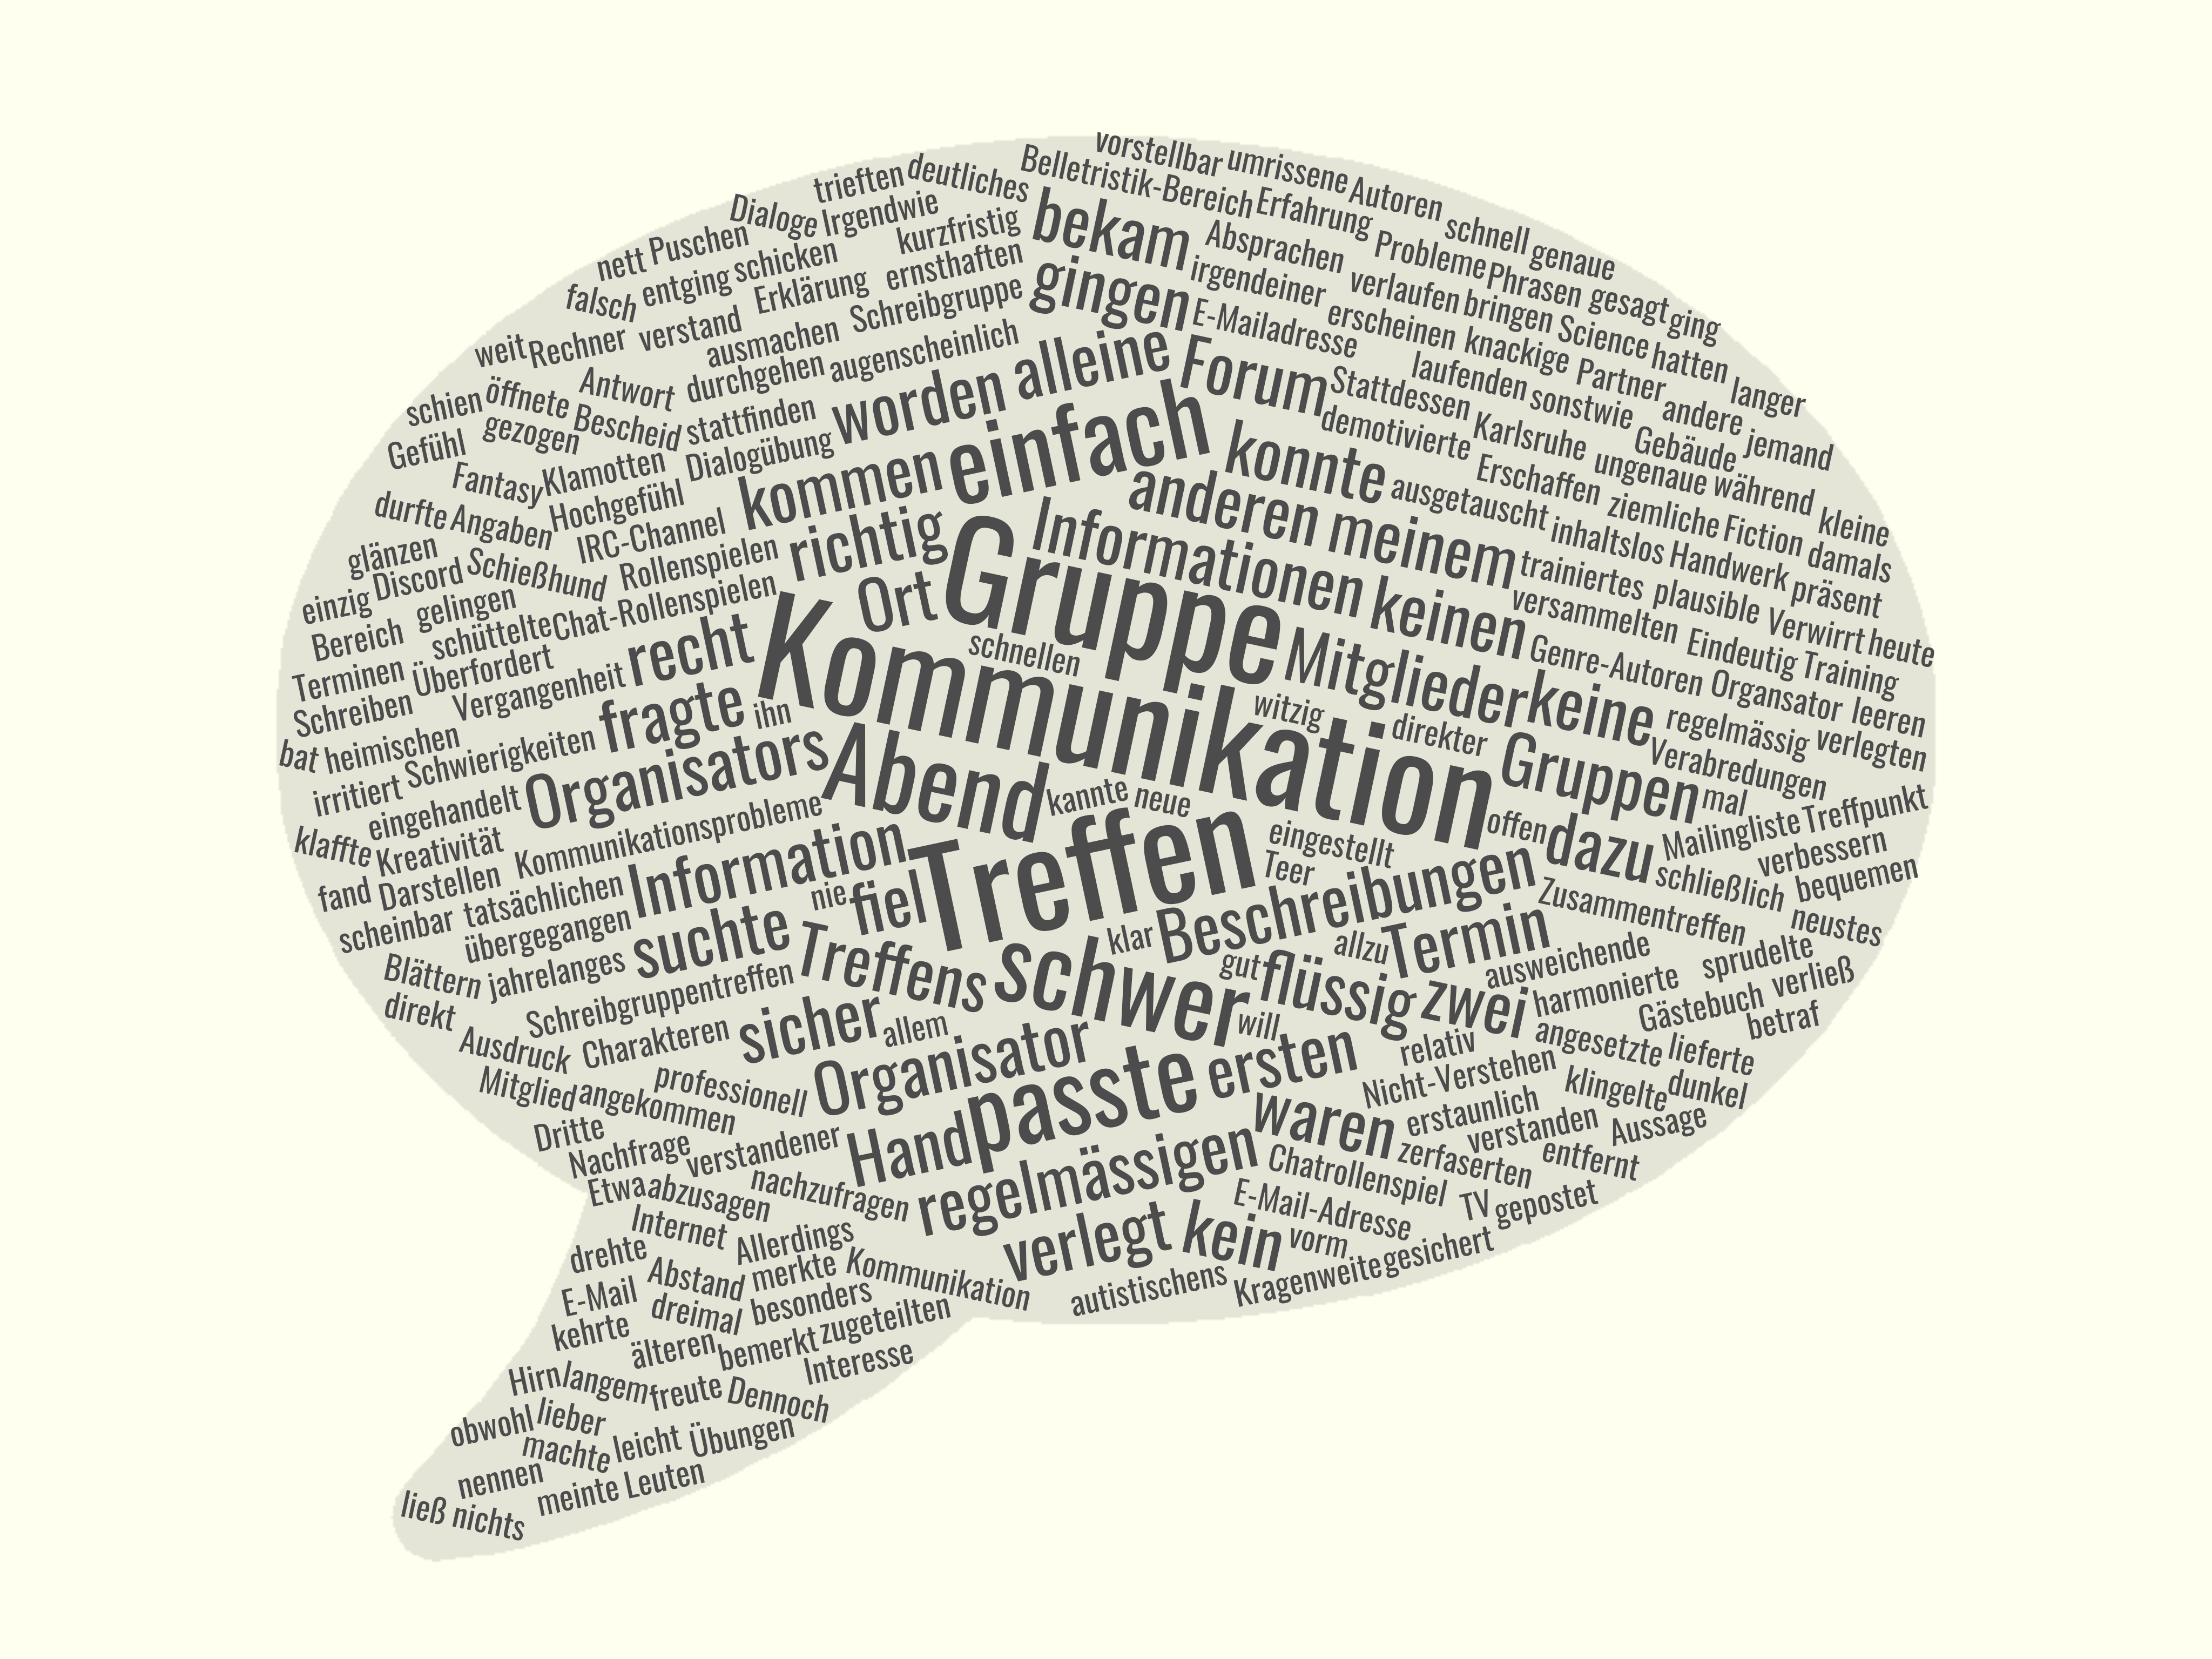 Eine Wortcloud, gebaut aus den Wörtern des Artikels, mit dem Hauptthema "Kommunikation"